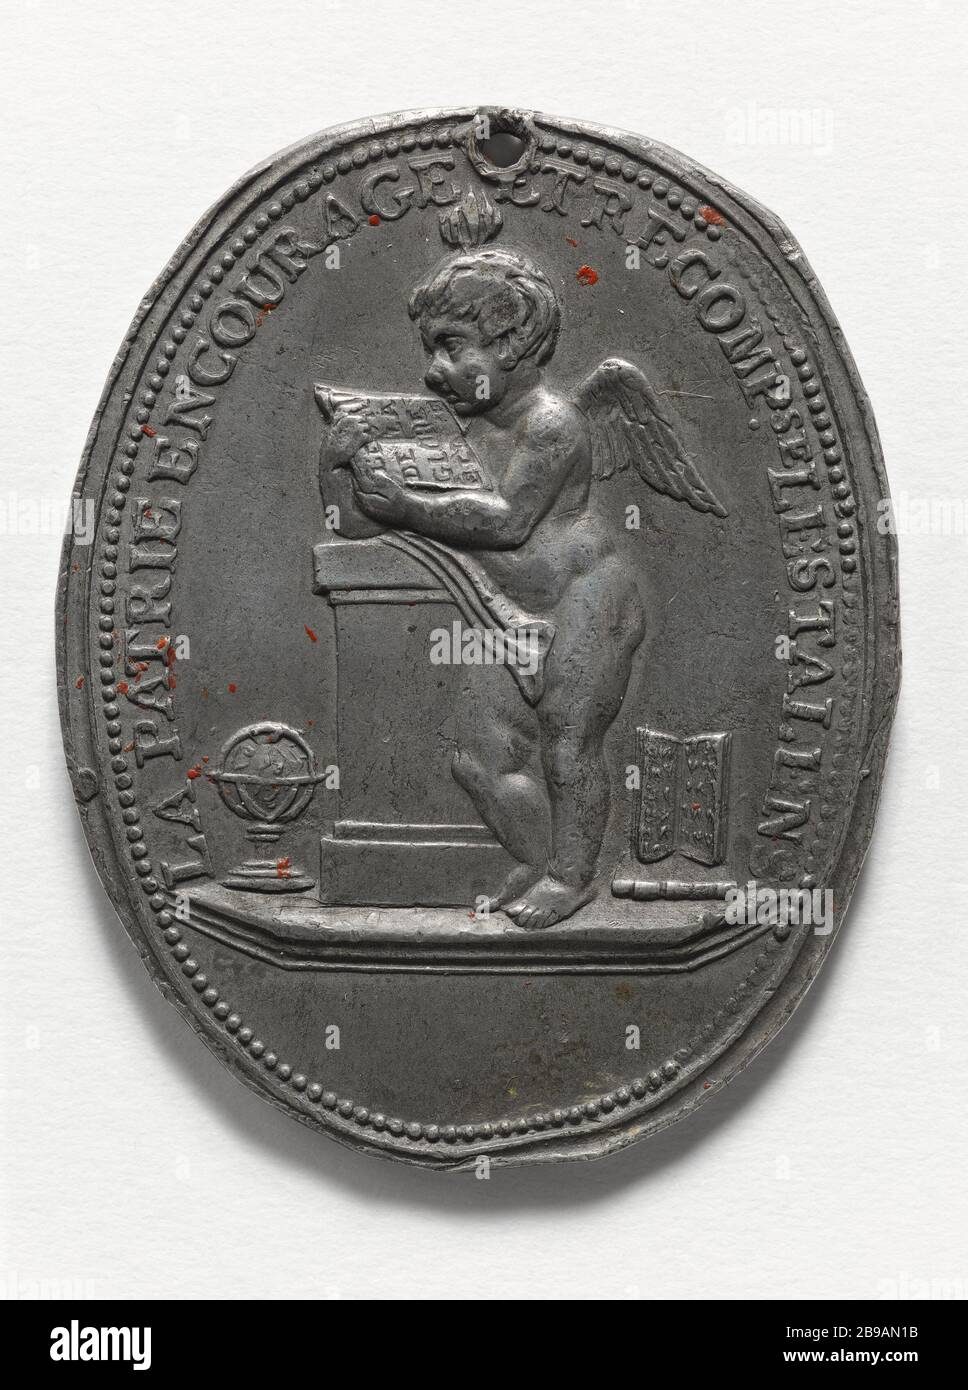 PRICE EMULATION, LYON, 1794 Jean-Marie Chavanne (1766-1826). 'Prix d'émulation, Lyon, 1794'. Etain, 1794. Paris, musée Carnavalet. Stock Photo